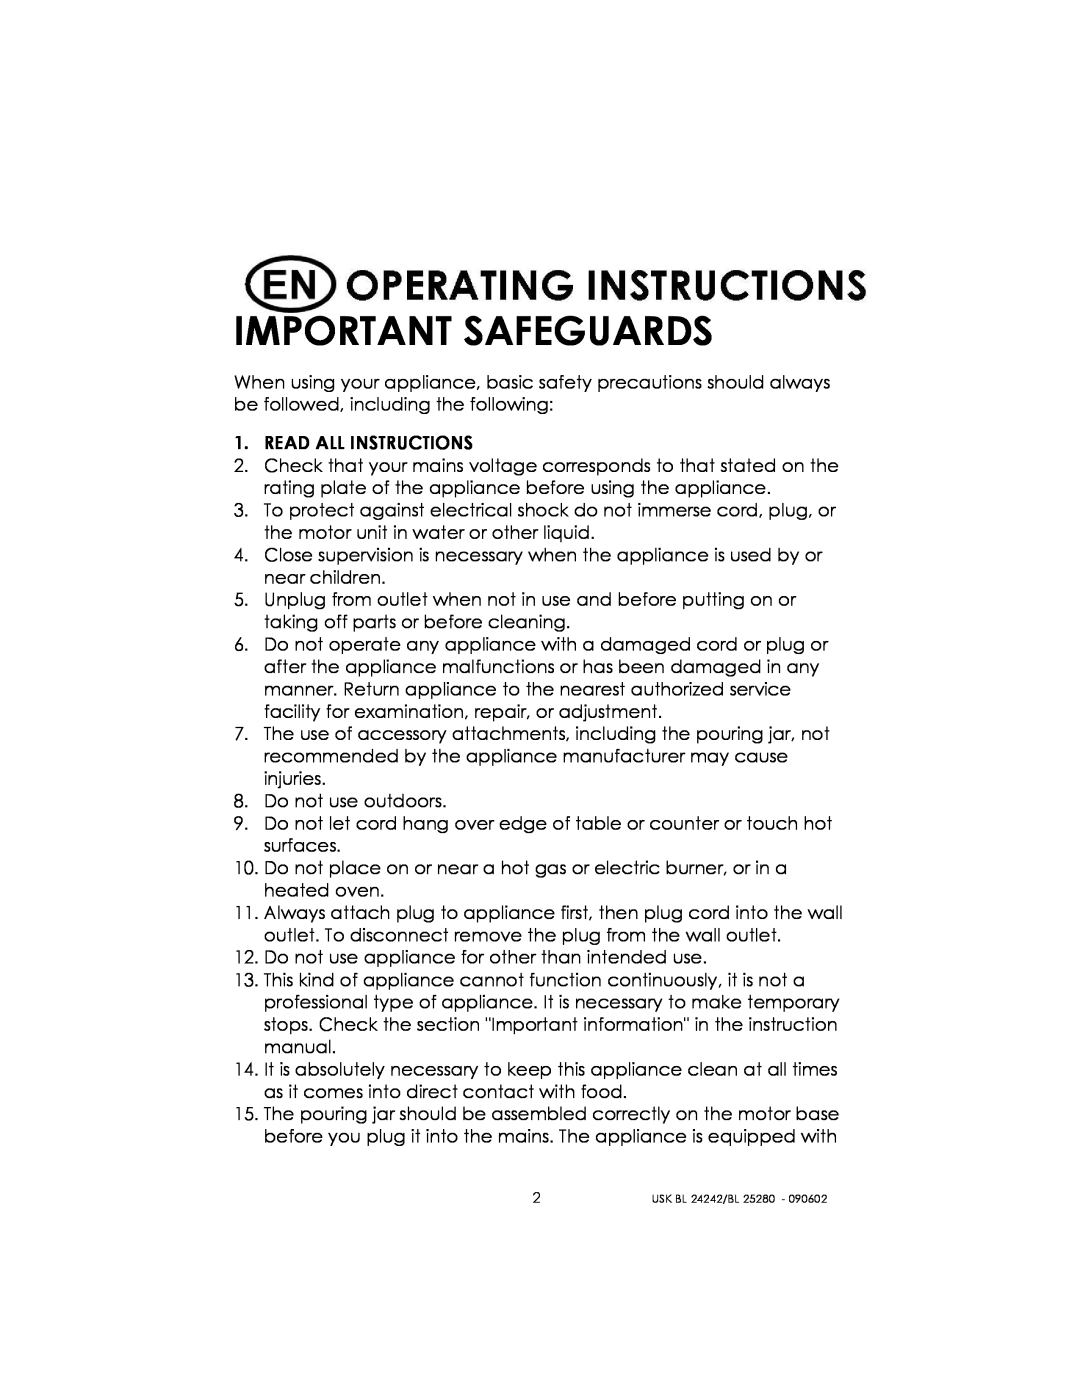 Kalorik BL 25280, BL 24242 manual Important Safeguards 